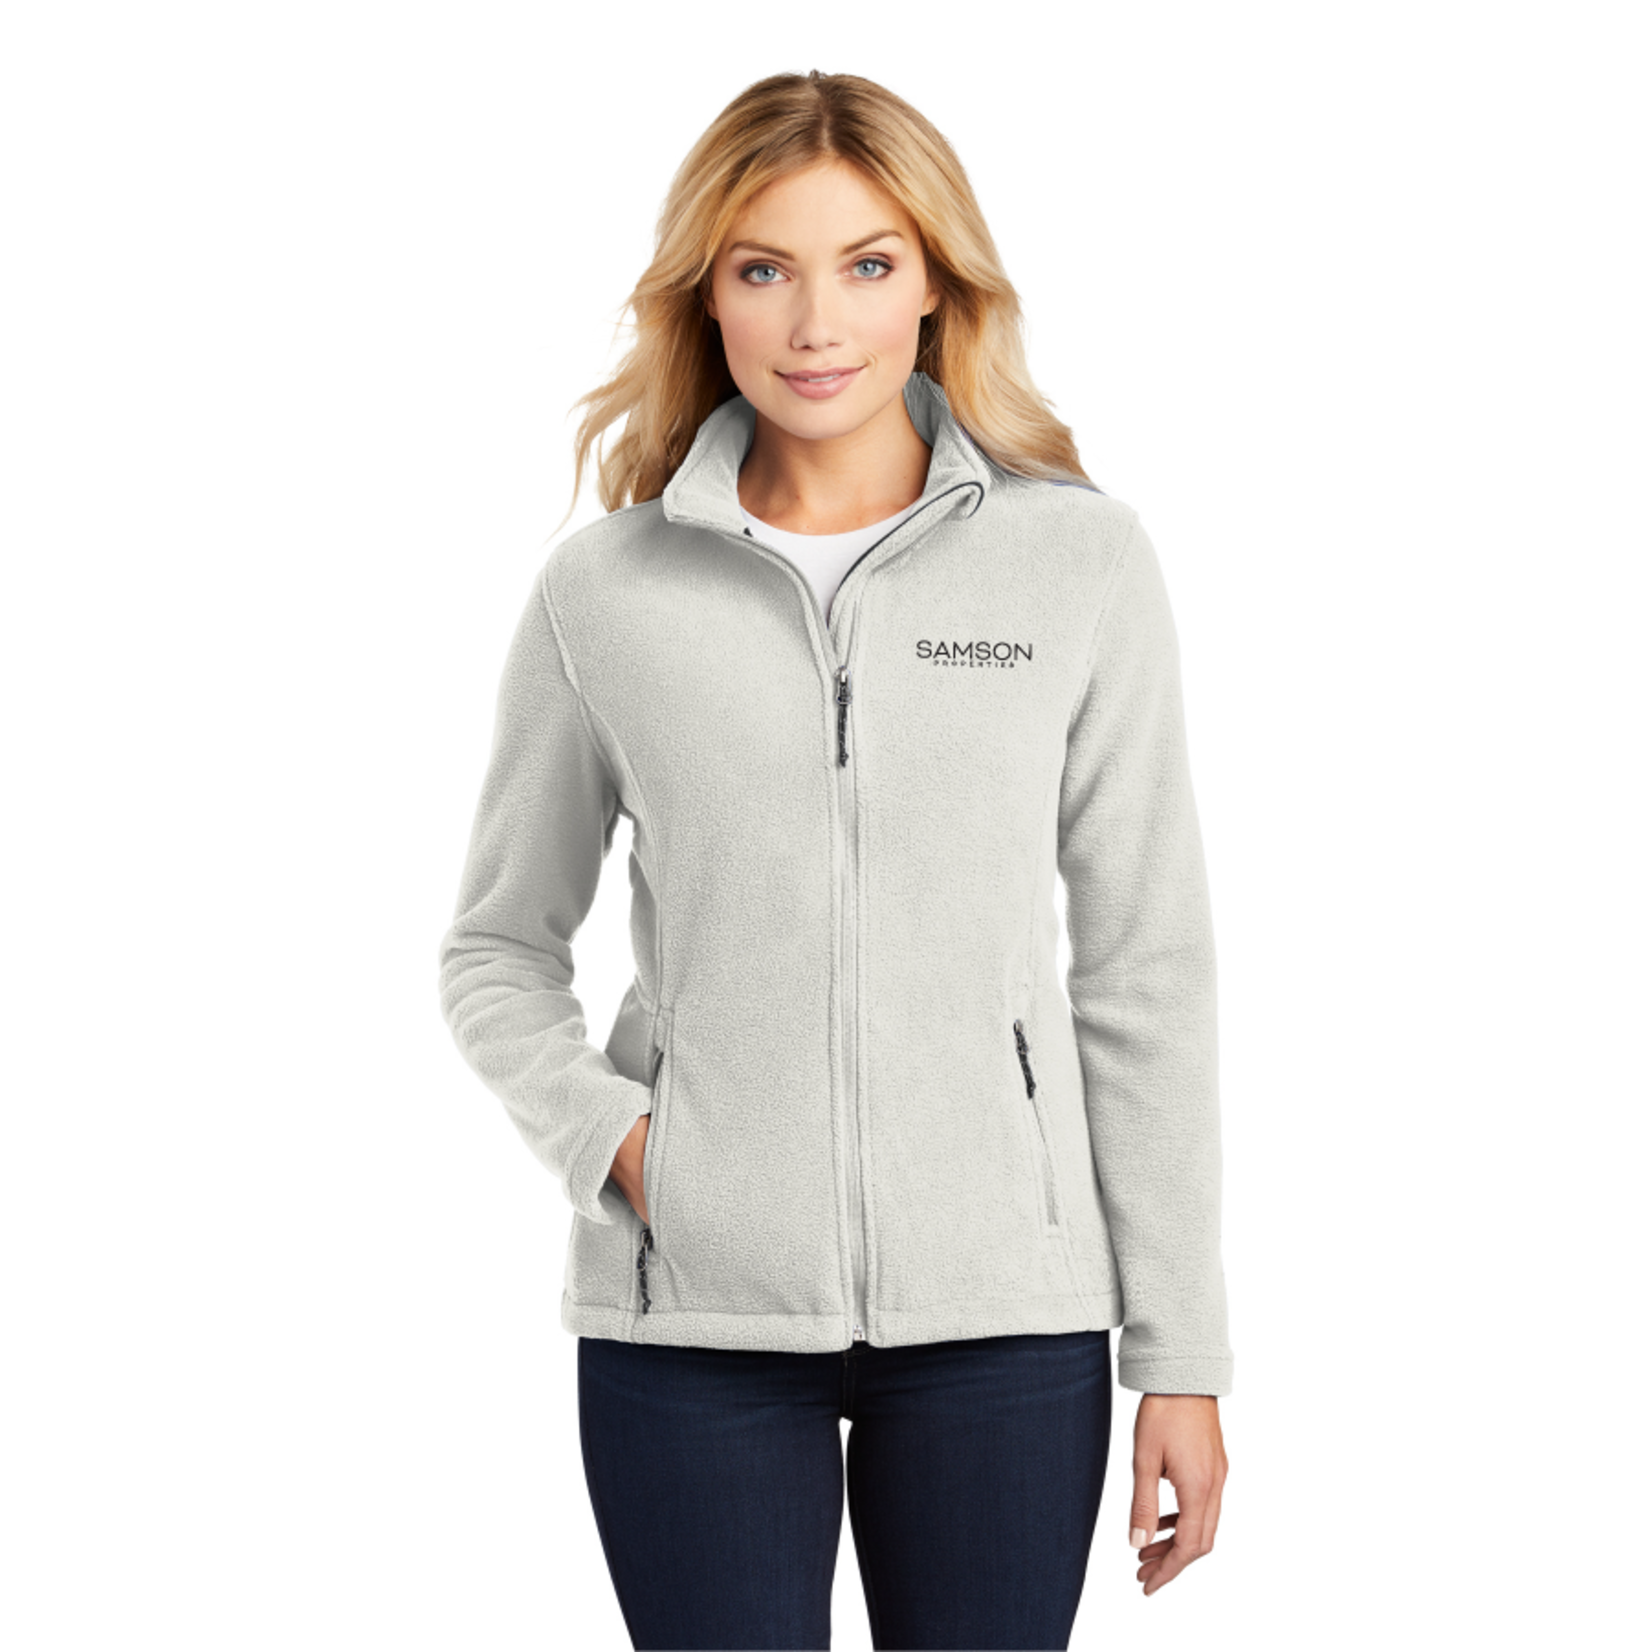 Port Authority L217 - Port Authority Ladies Value Fleece Jacket